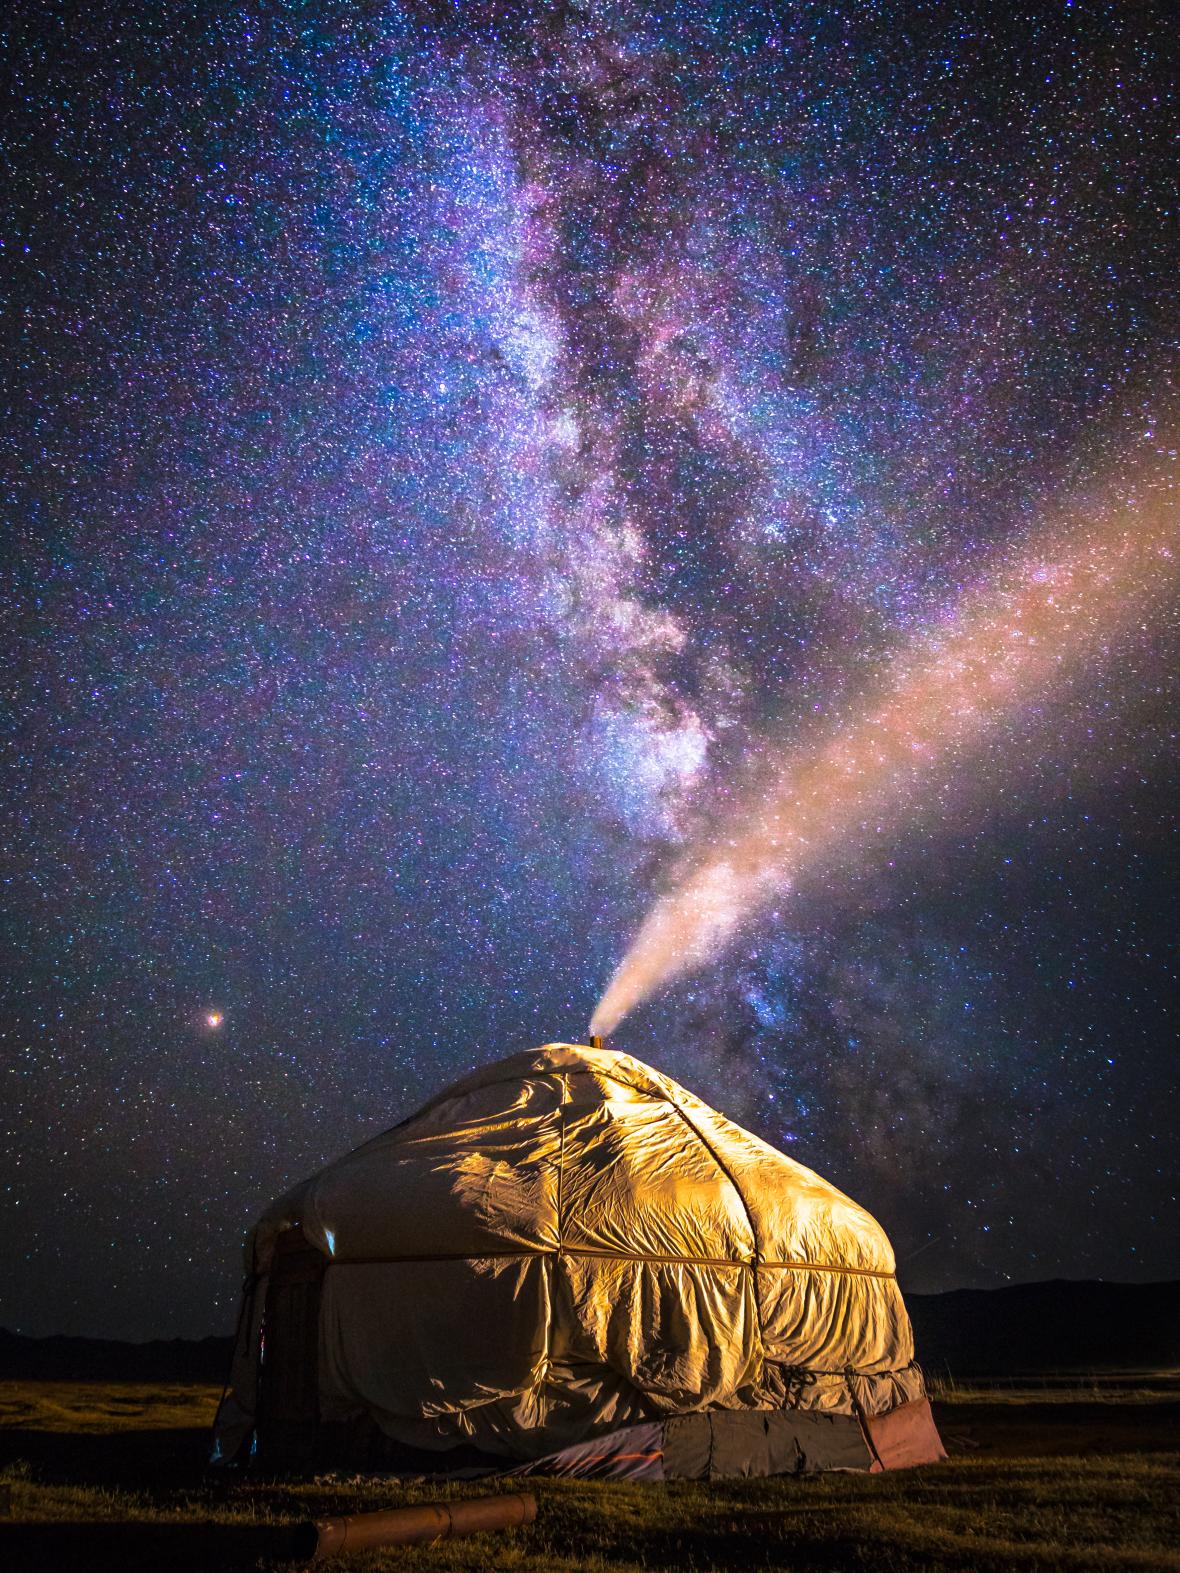 Ενα γιαρτ (yurt), παραδοσιακό φορητό σπίτι πολλών νομαδικών λαών στις στέπες της Κεντρικής Ασίας, κάτω από έναν εντυπωσιακό μογγολικό ουρανό. Το συγκεκριμένο ανήκει σε κυνηγούς αετών από το Καζακστάν 